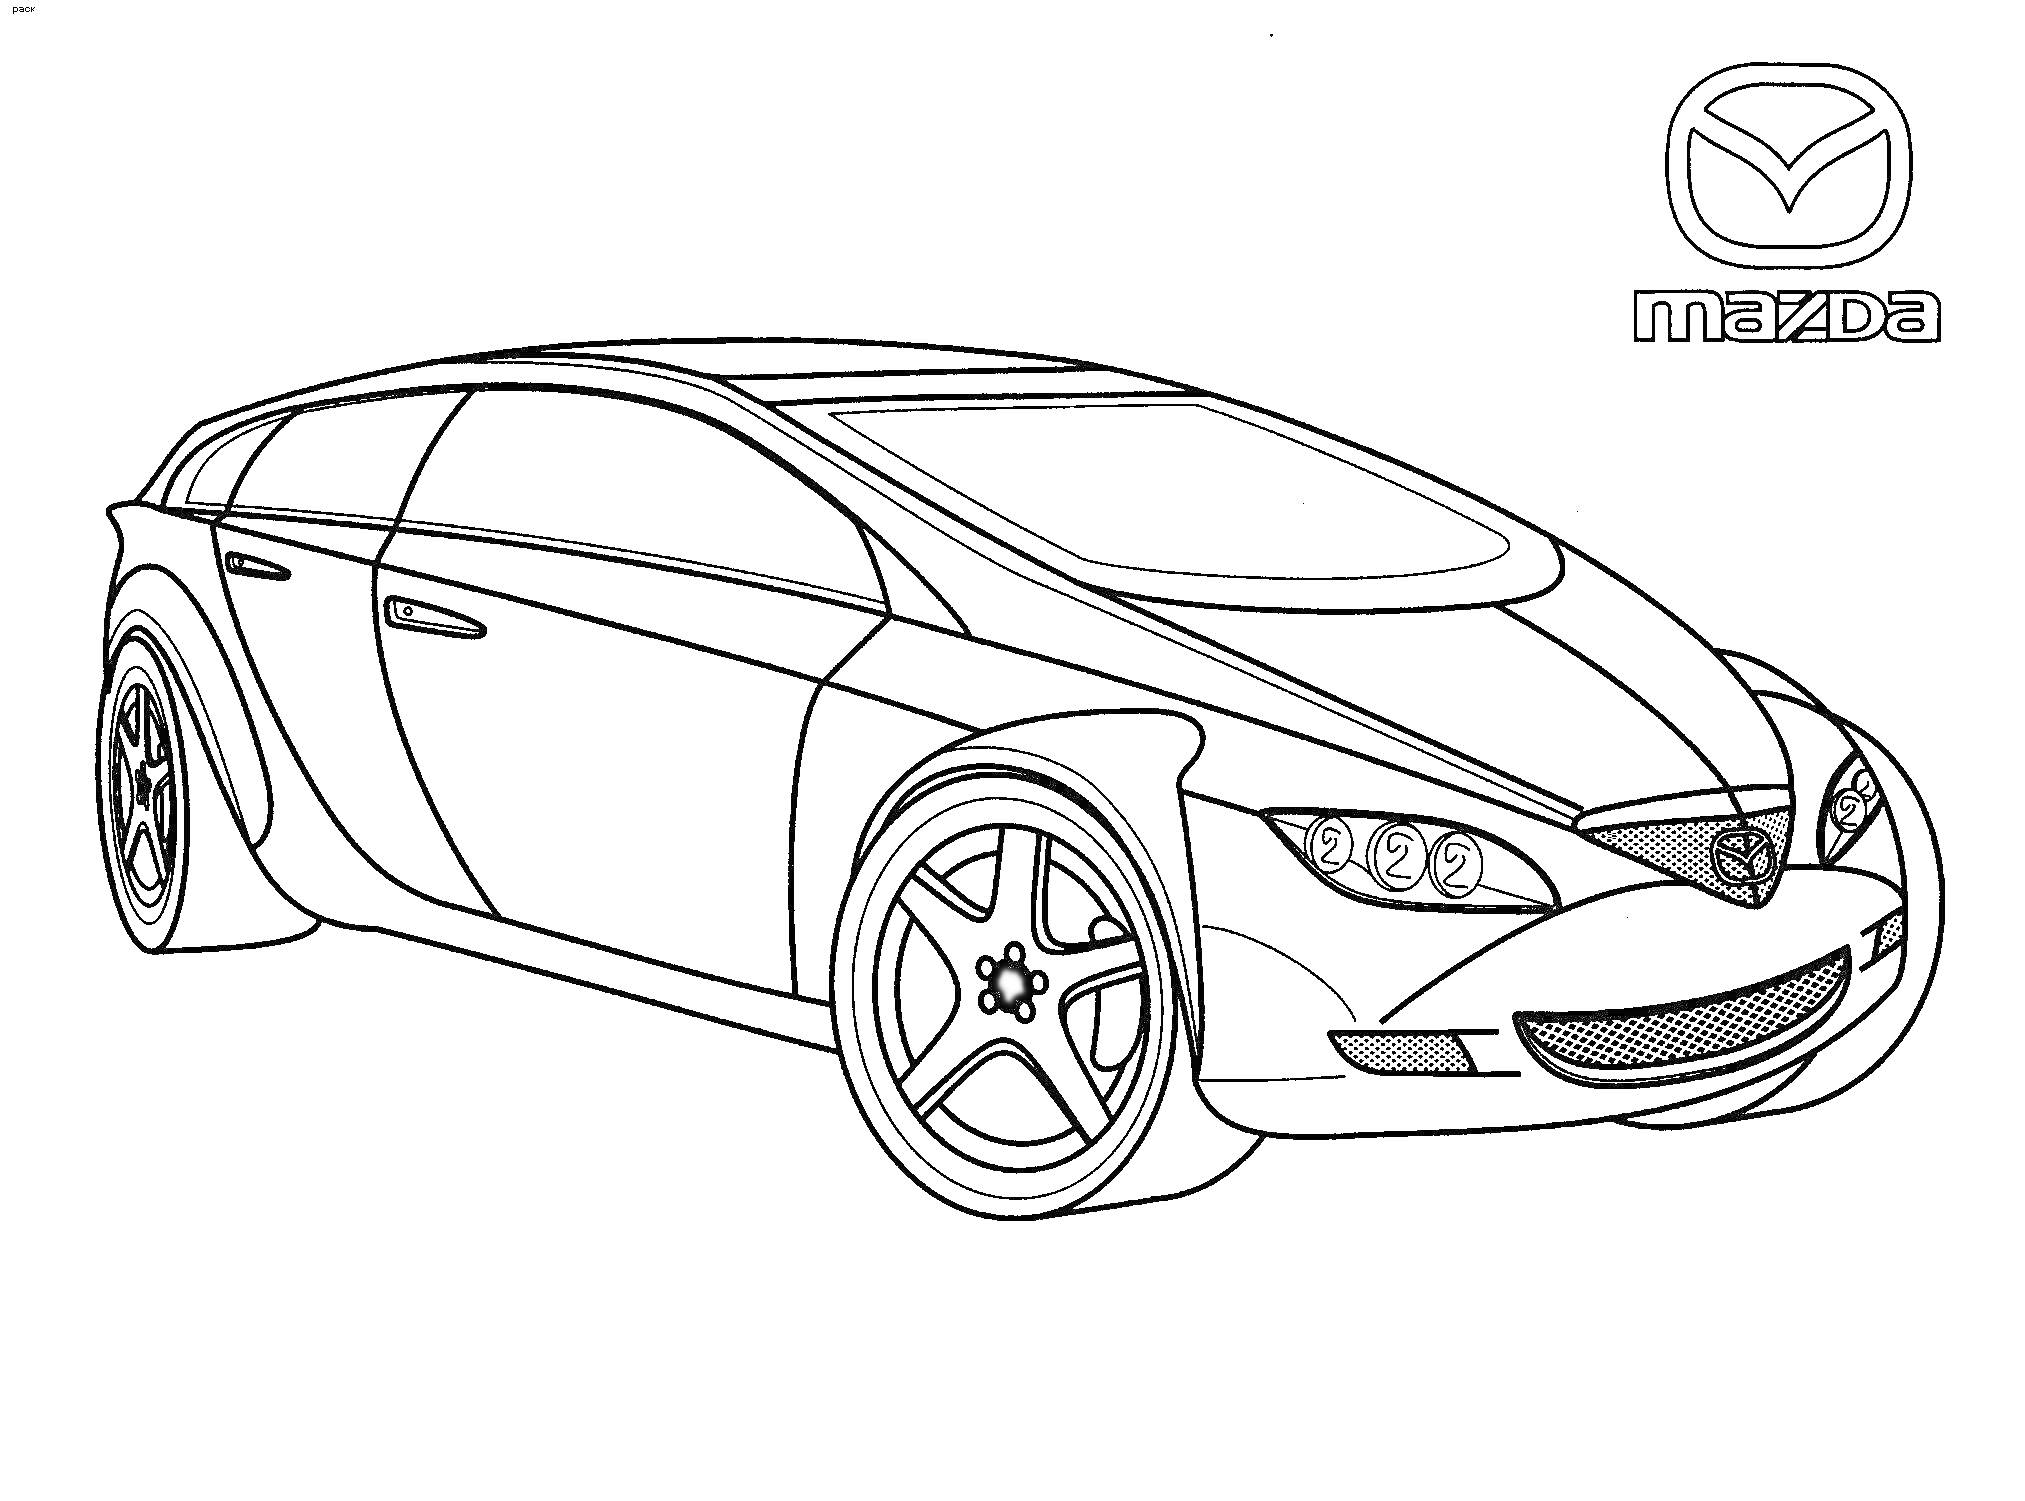 Раскраска с изображением концептуального автомобиля марки Mazda и логотипом Mazda